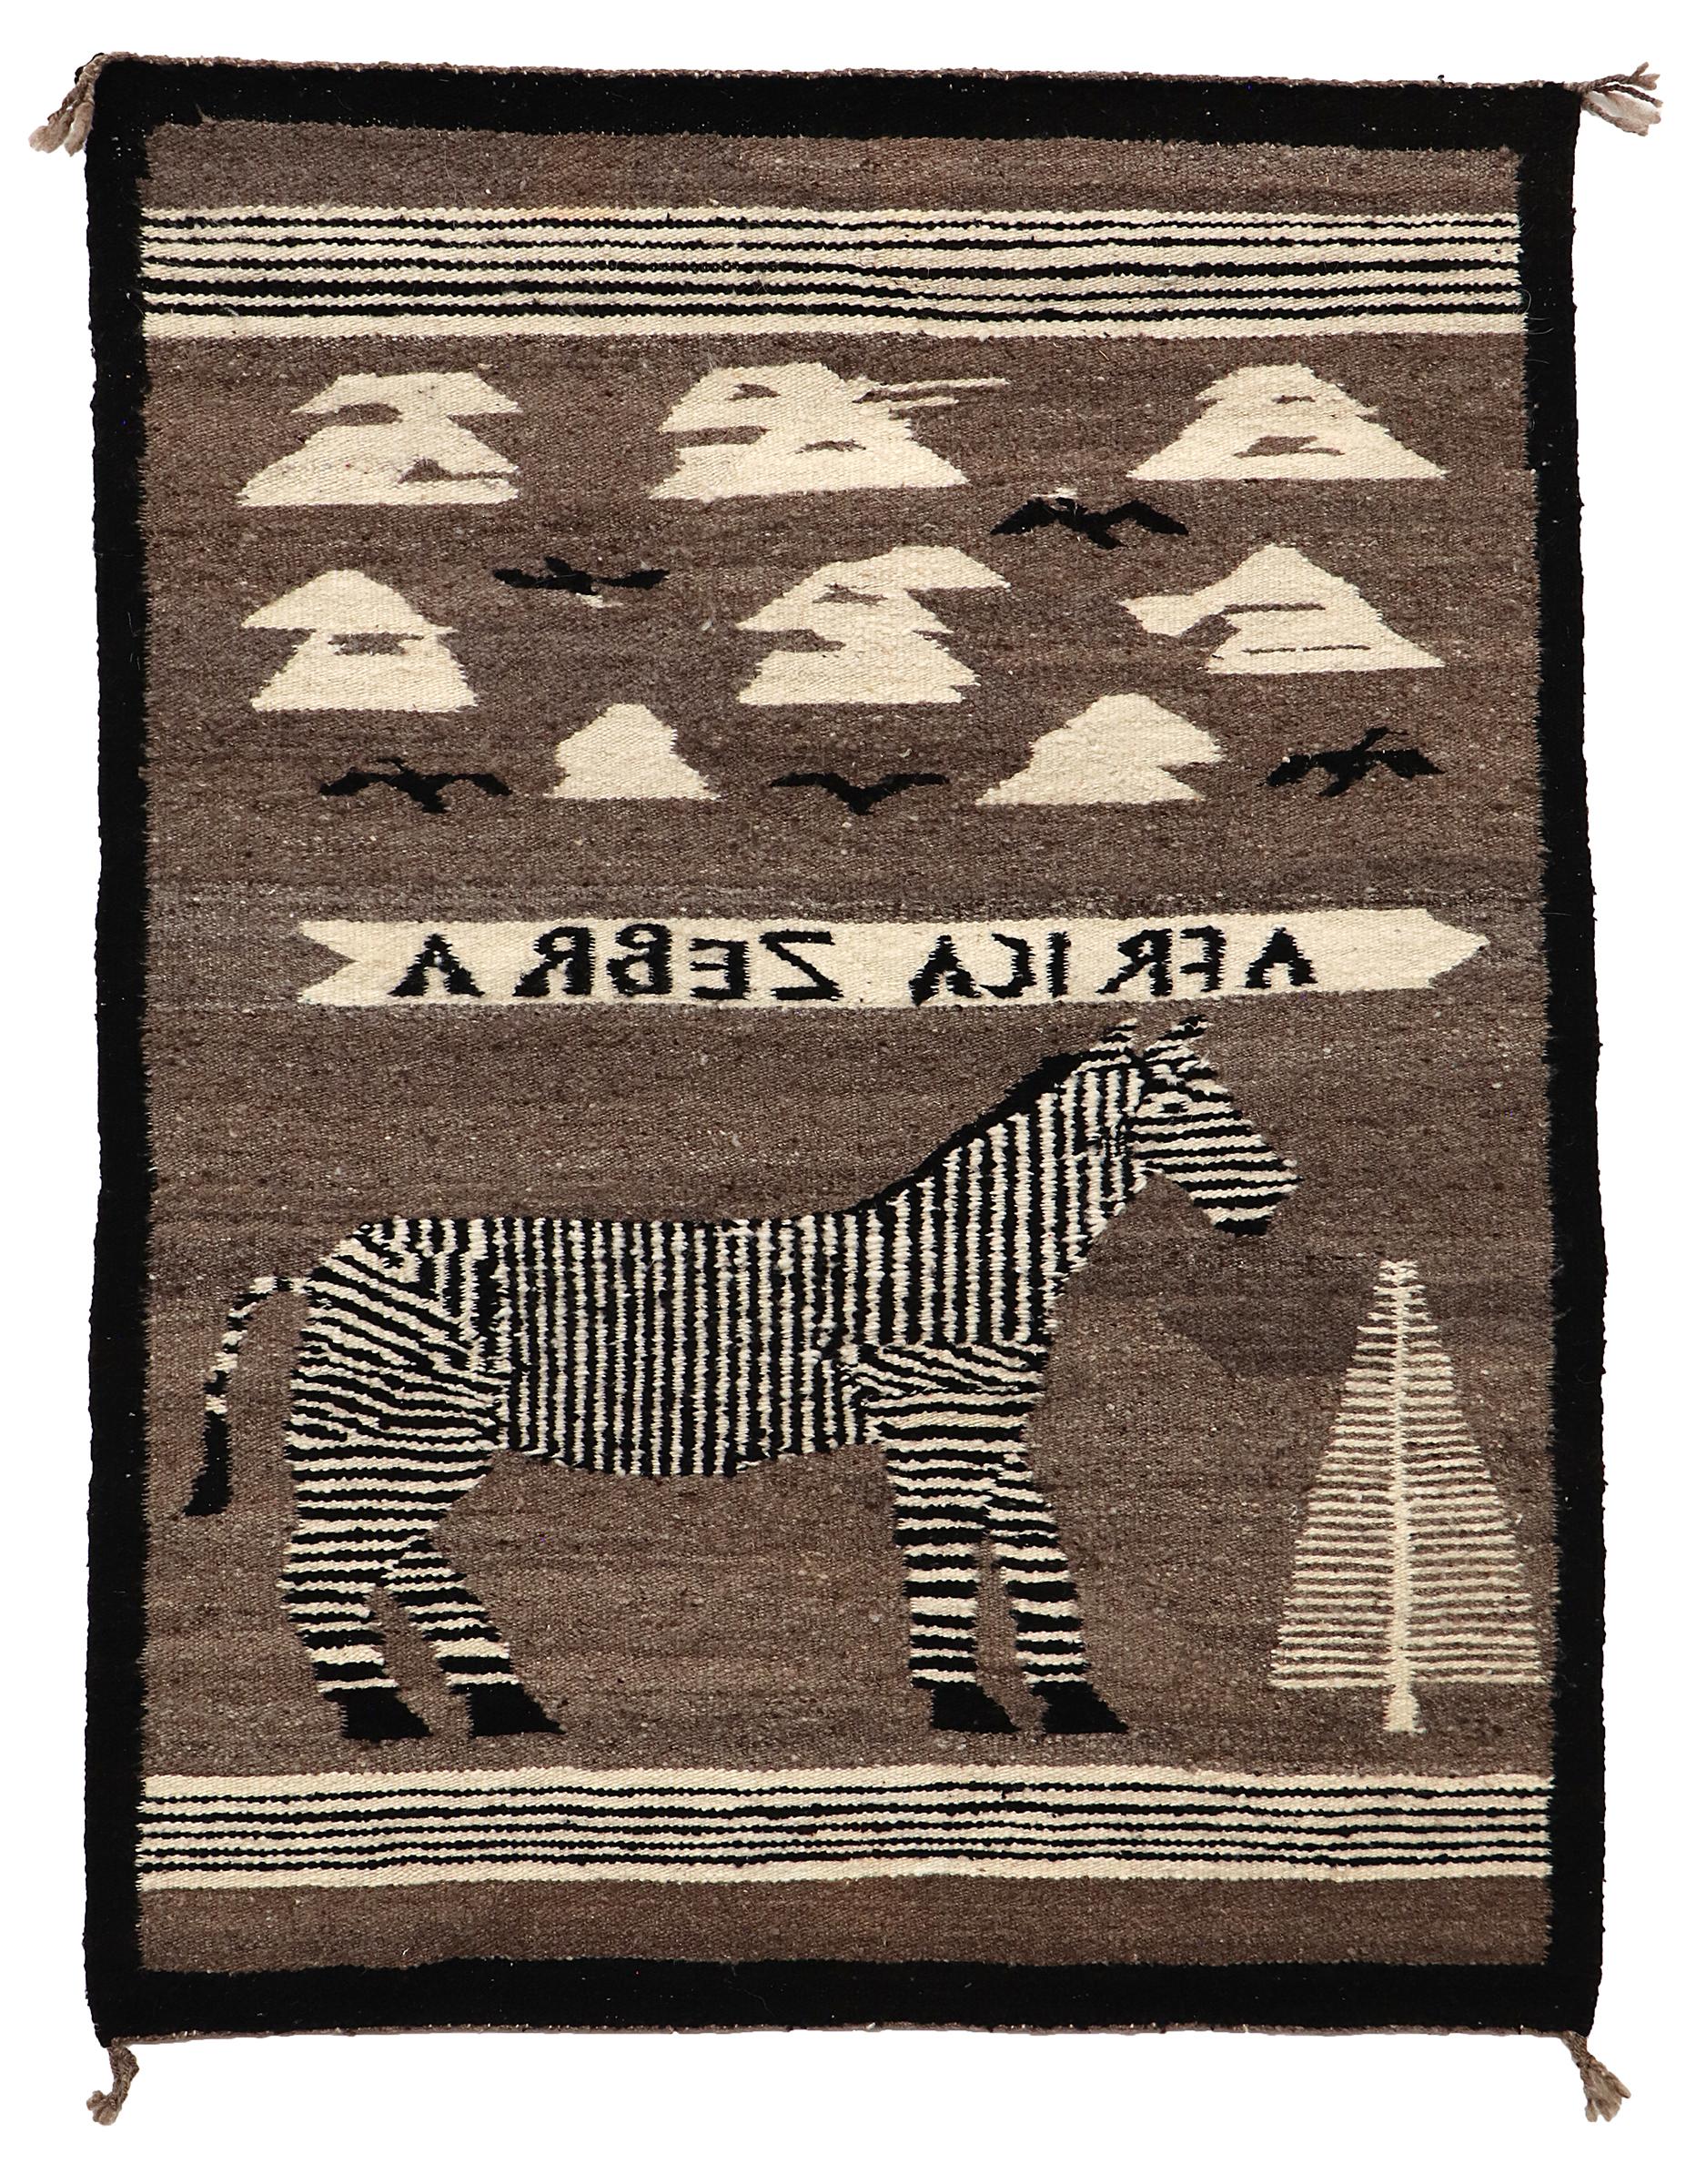 Vintage 1950s Pictorial Navajo Rug. Les éléments picturaux de ce textile tissé à la main comprennent un zèbre africain, un arbre, des nuages et des oiseaux, ainsi que les mots,  